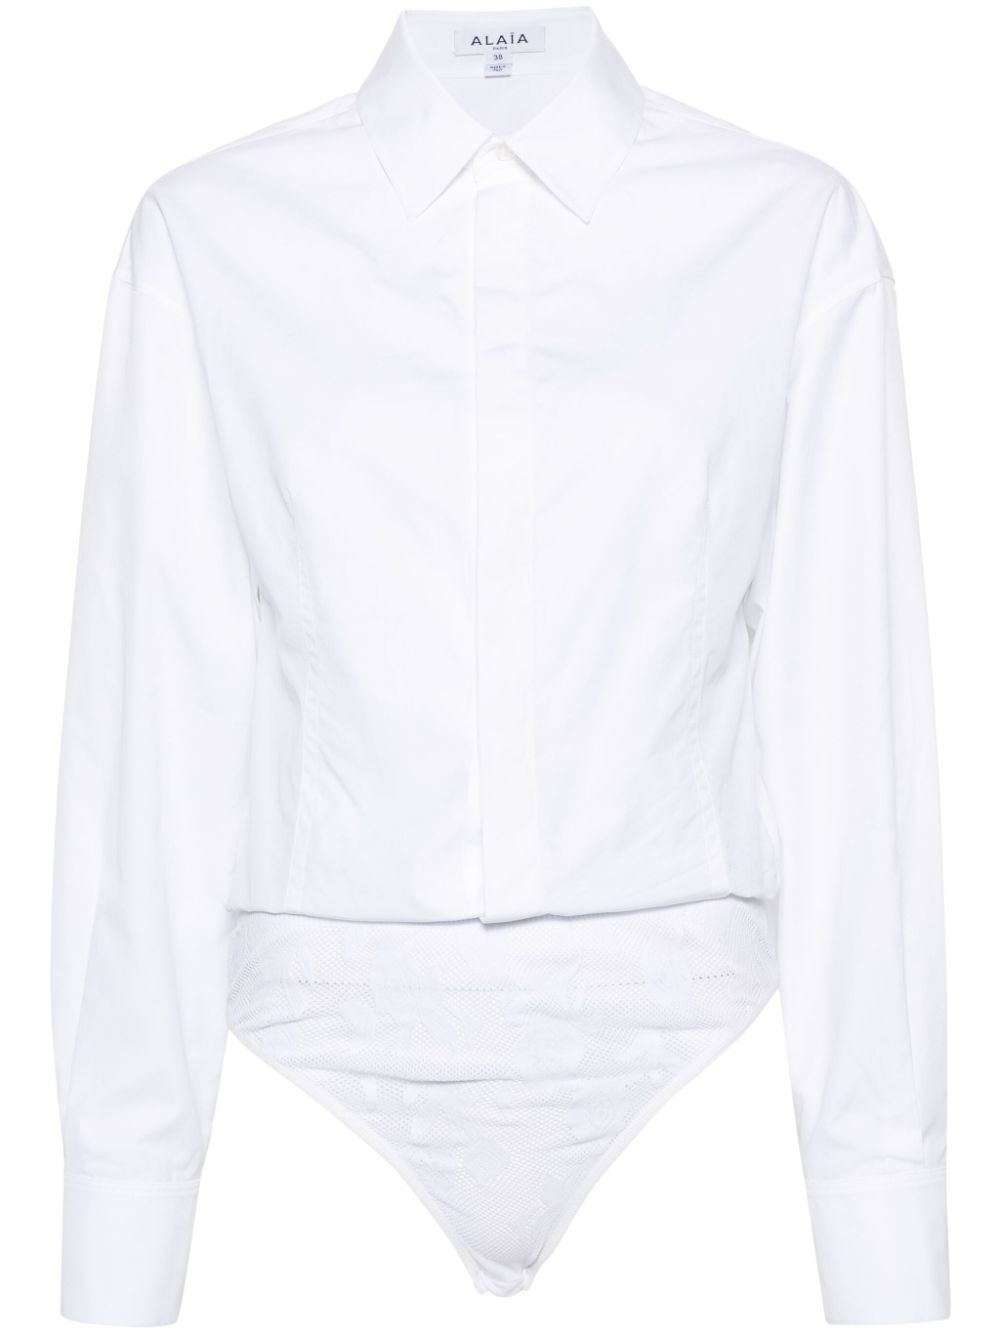 纯白棉质衬衫连体衣女款